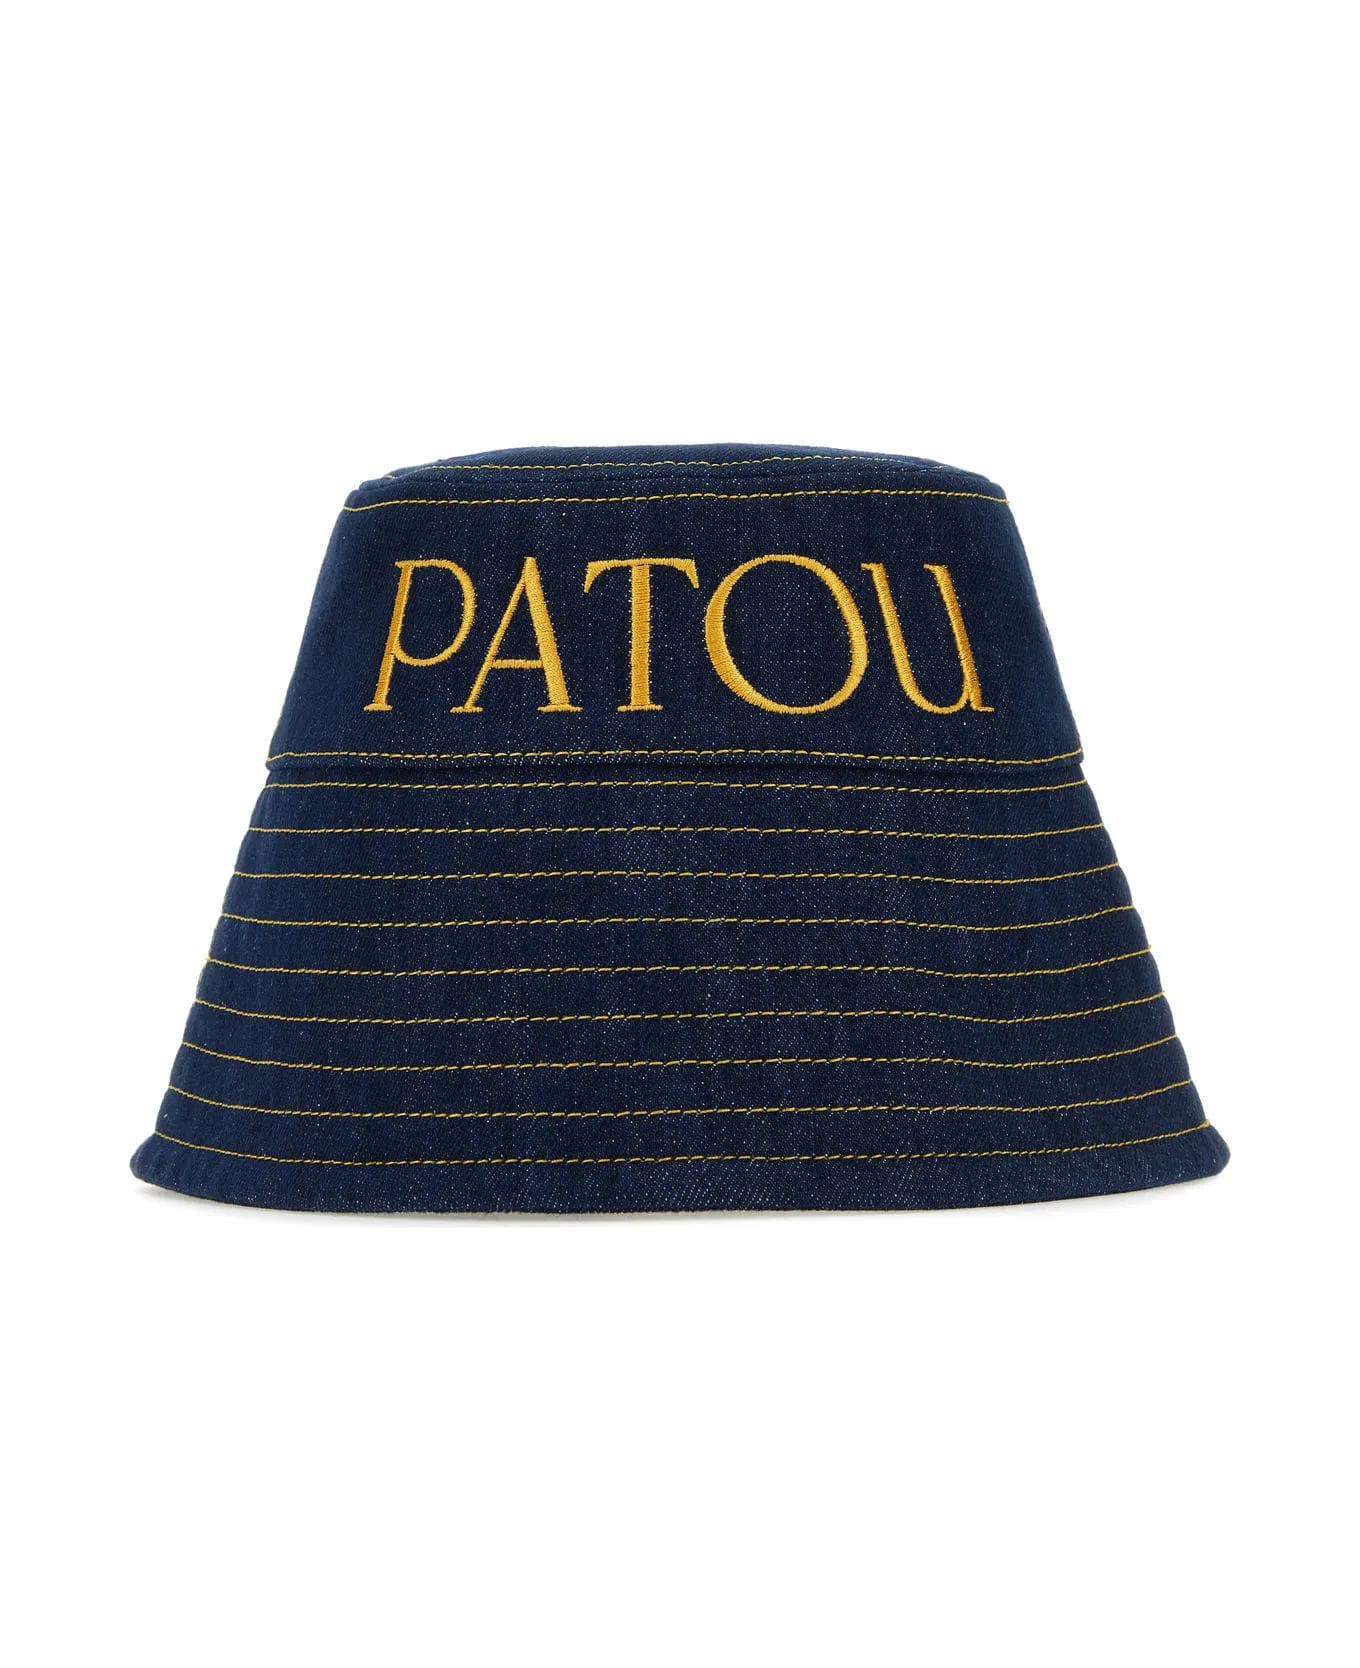 Patou Dark Blue Denim Hat - RODEO